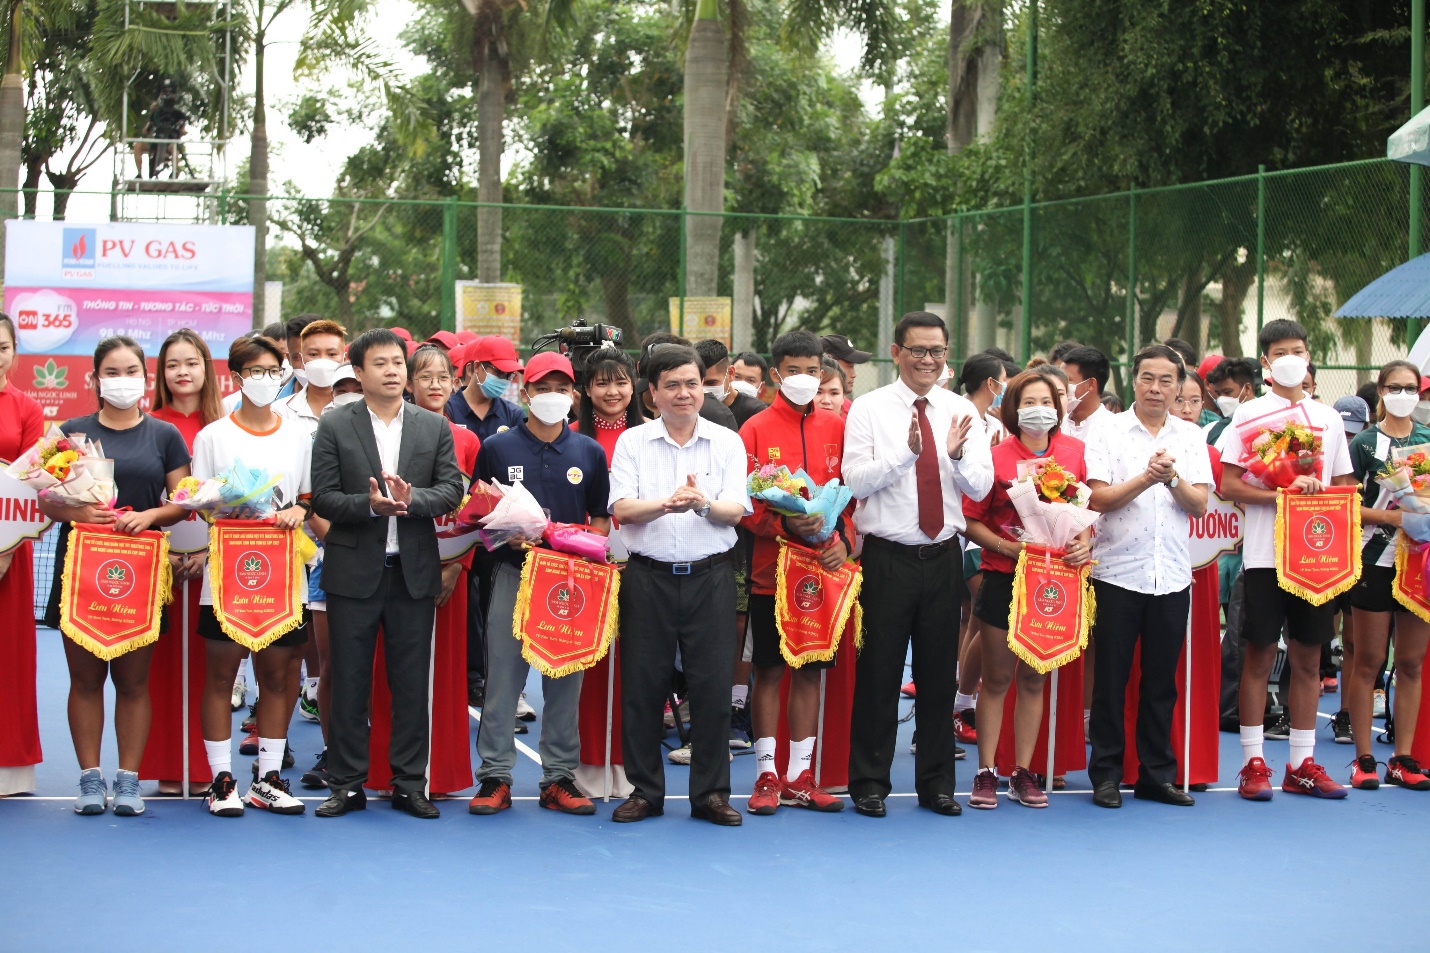  140 VĐV tranh tài tại giải quần vợt quốc gia cúp Sâm Ngọc Linh - 3